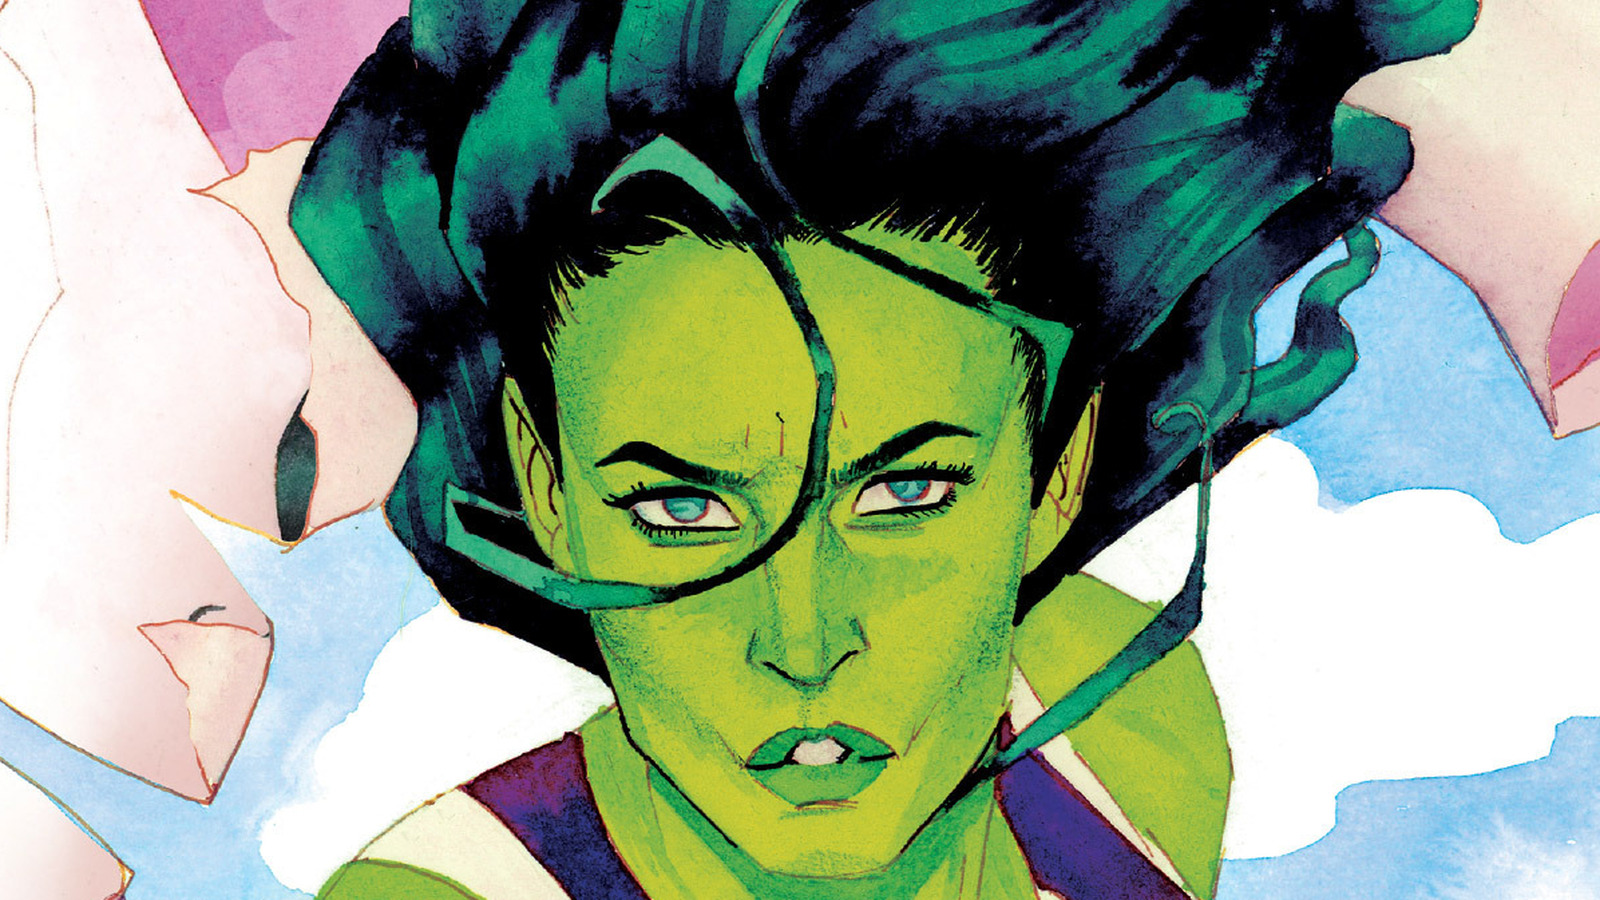 She-Hulk vs Daredevil by David Lopez